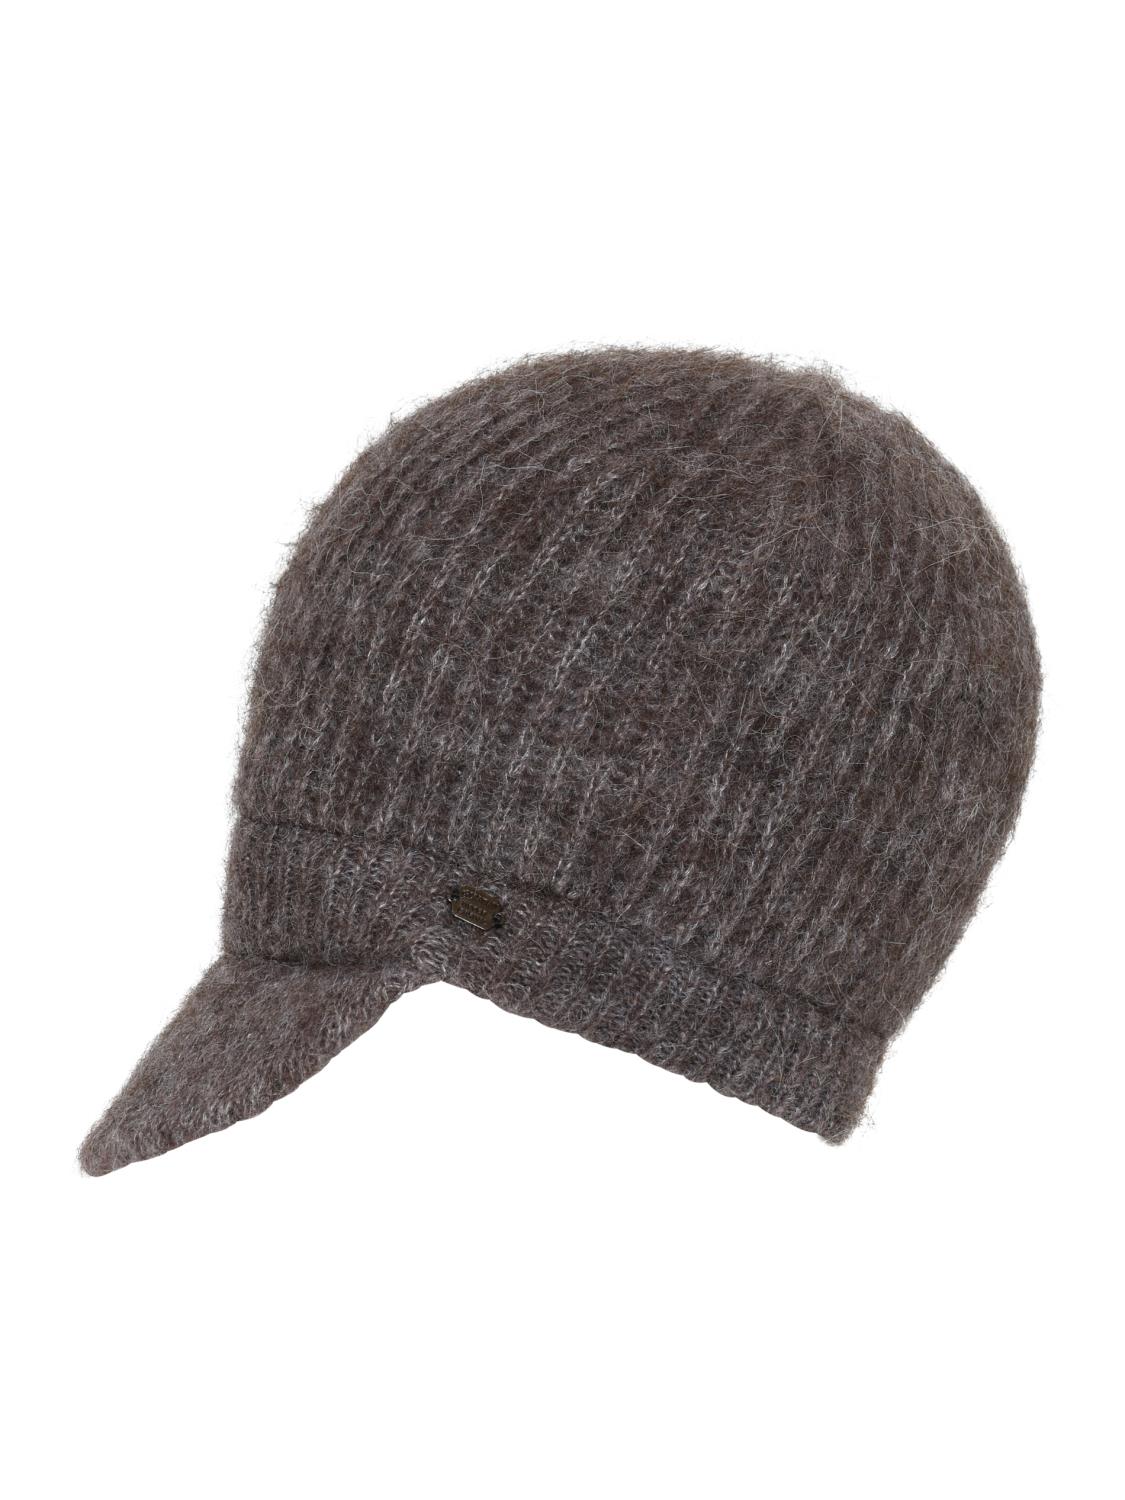 Mariz knitted baker boy hat